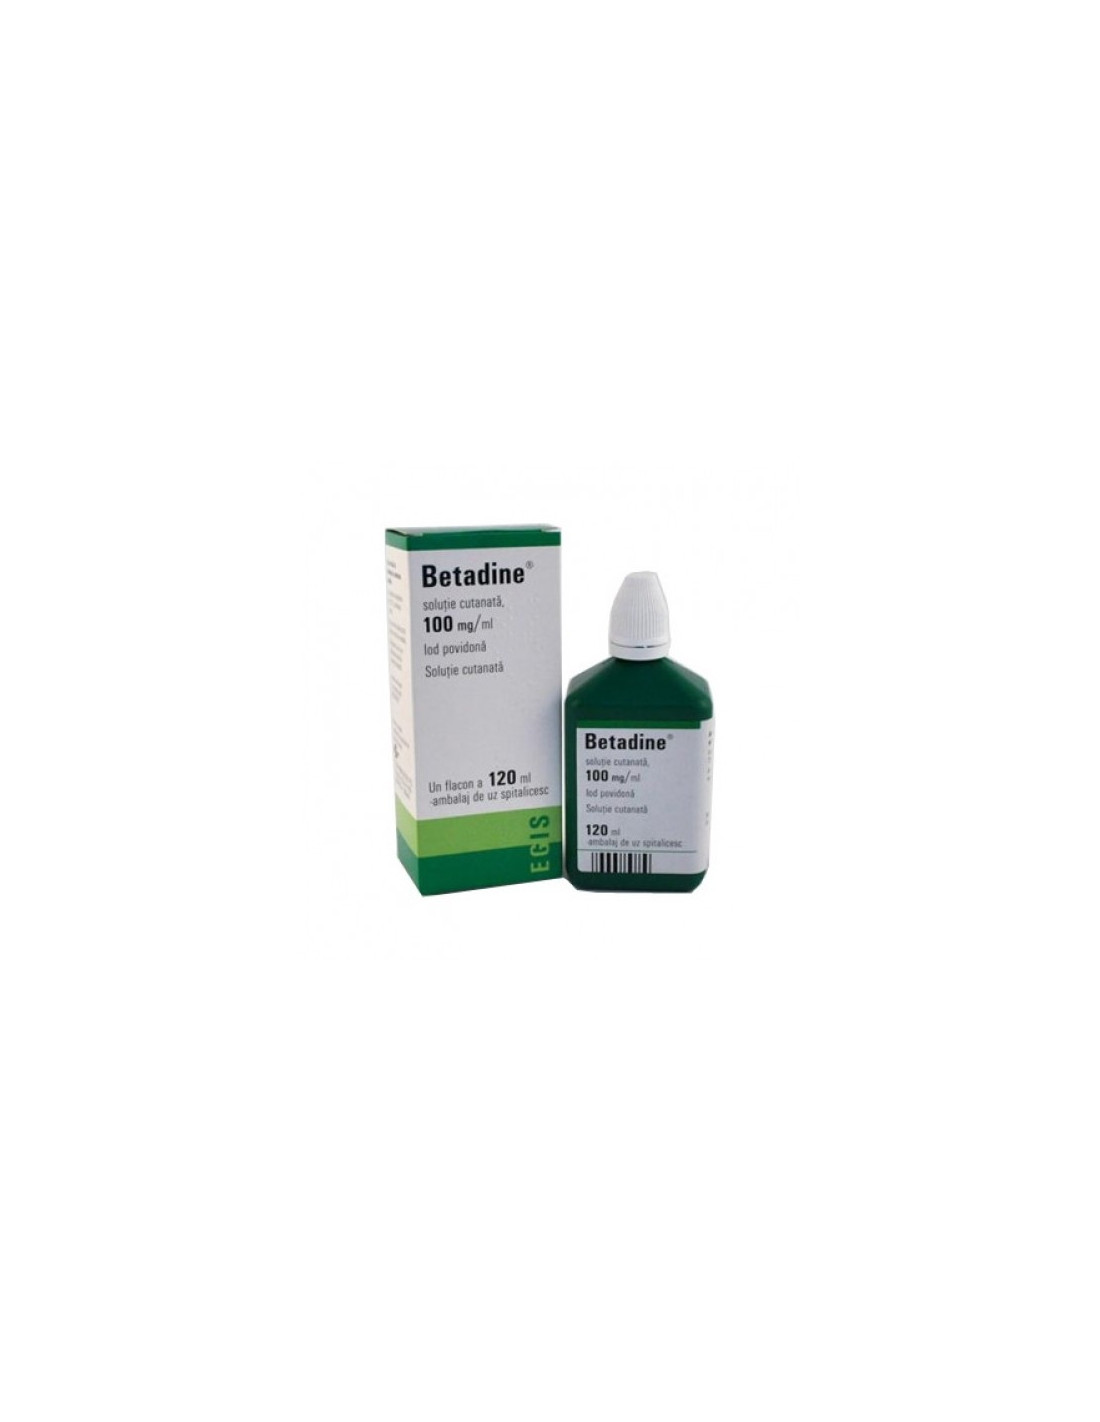 Betadine soluție, 120 ml, Egis Pharmaceuticals 